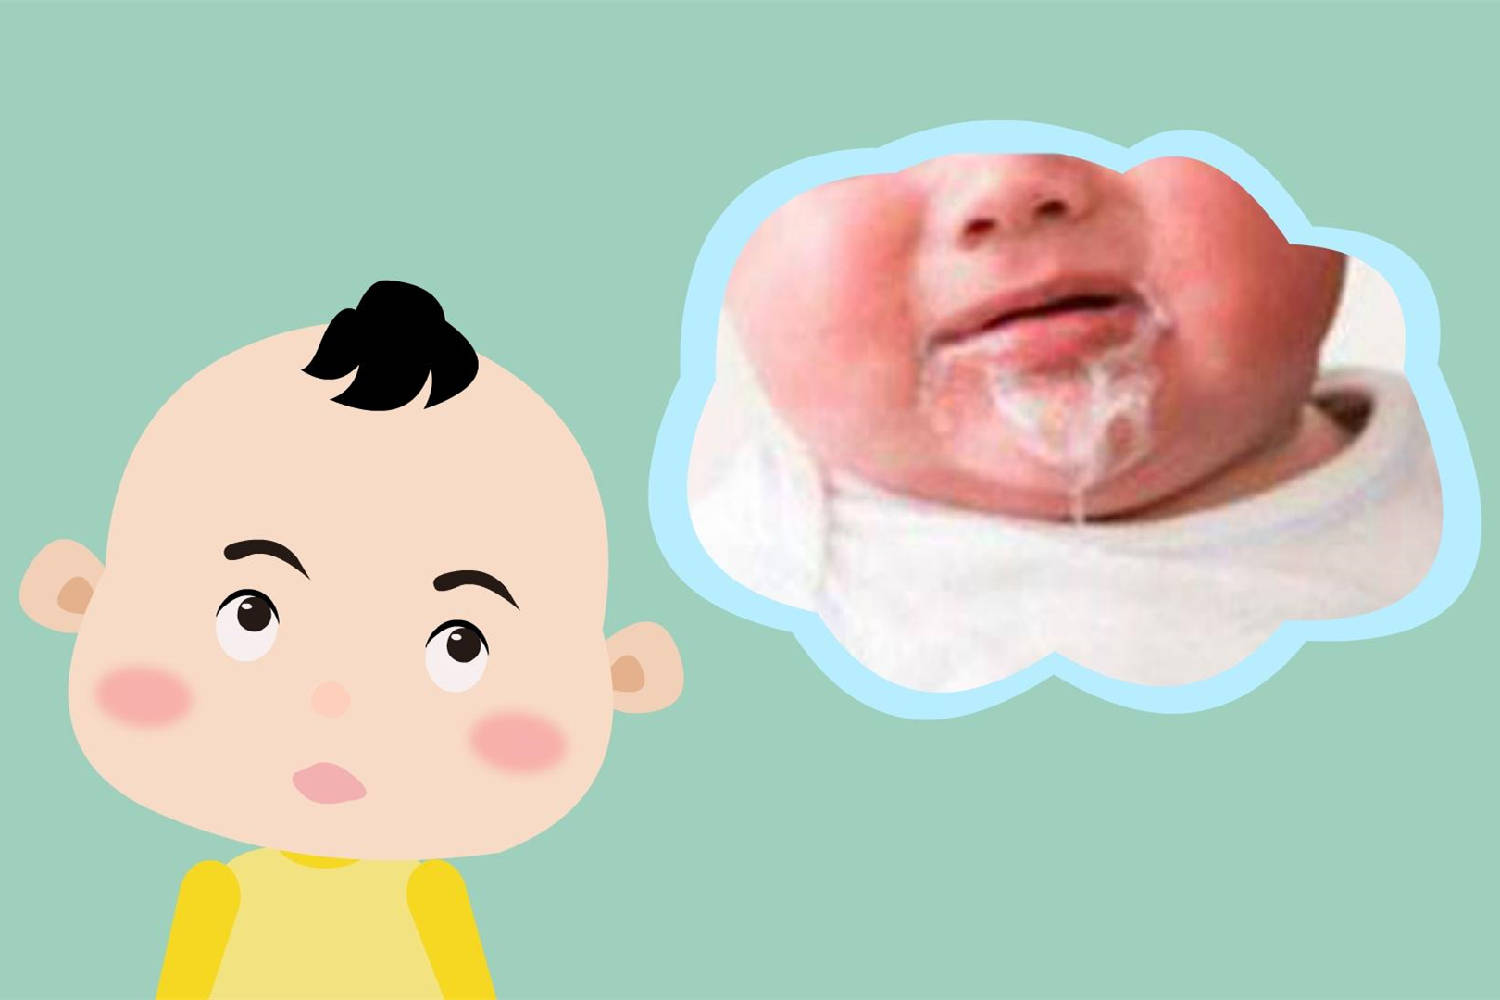 如果吐奶是喷射性的,或者精神不好,甚至有发热情况,就说明宝宝生病了